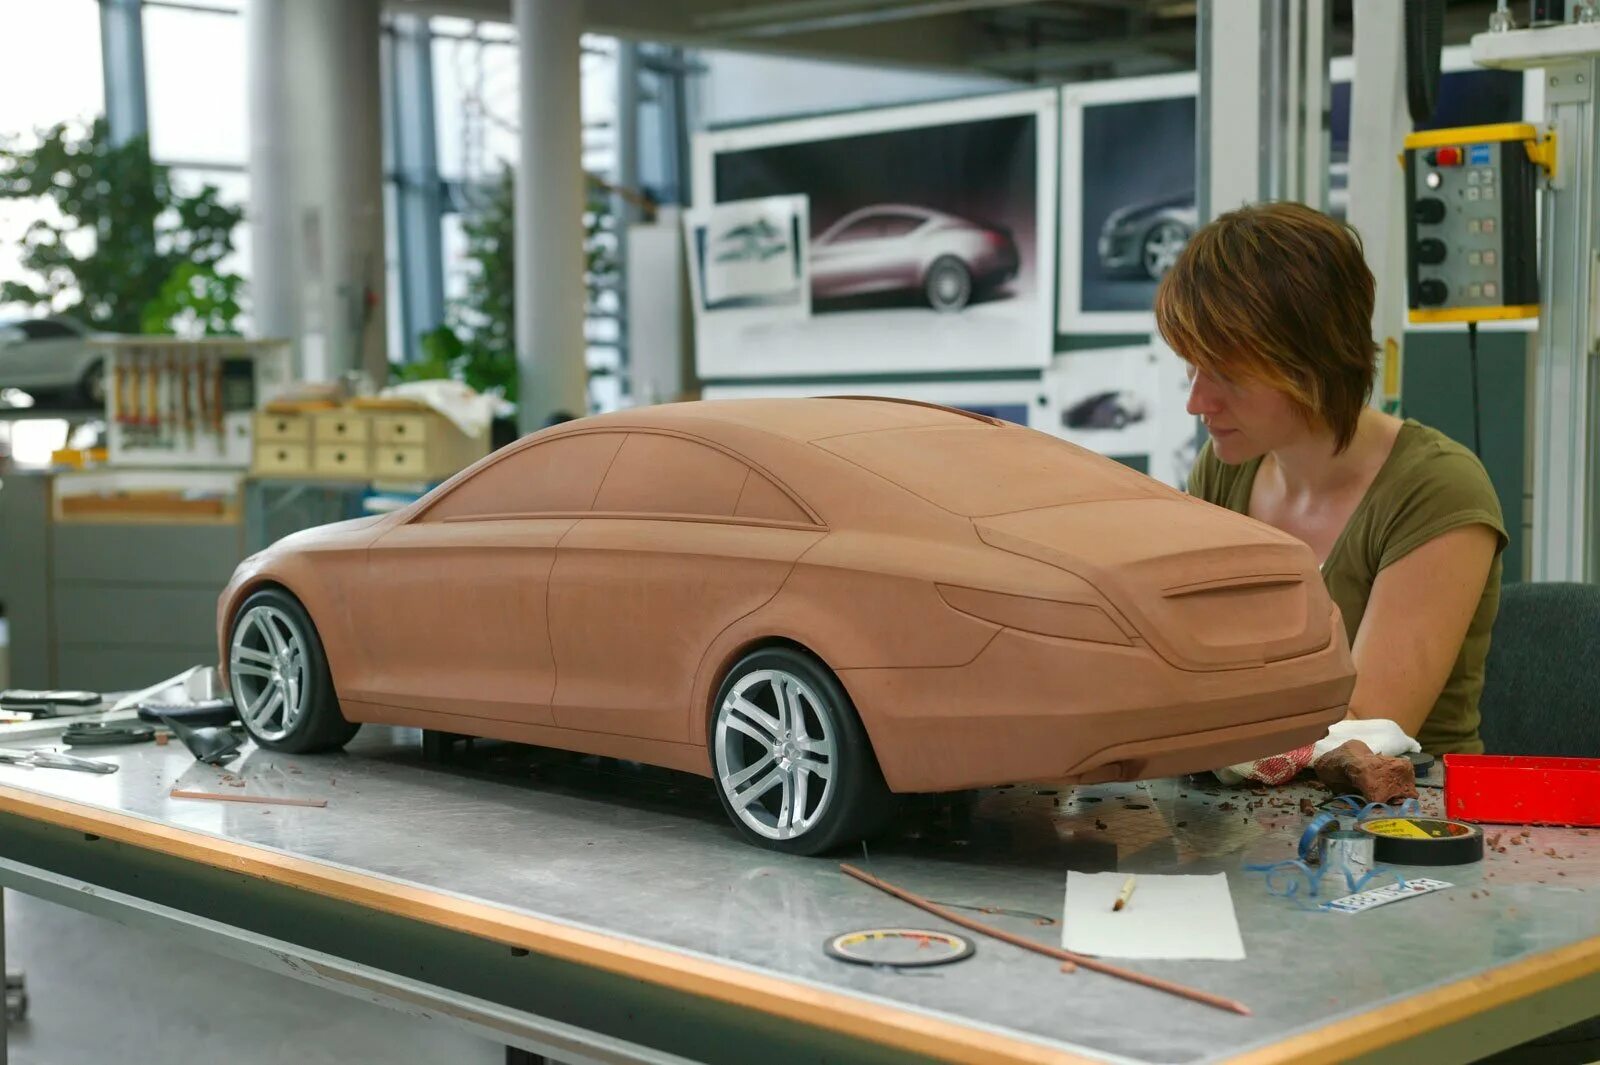 Как надо делать машину. 3d моделирование в автопромышленности. Муляж автомобиля. Пластилиновые макеты автомобилей. Моделирование автомобилей.